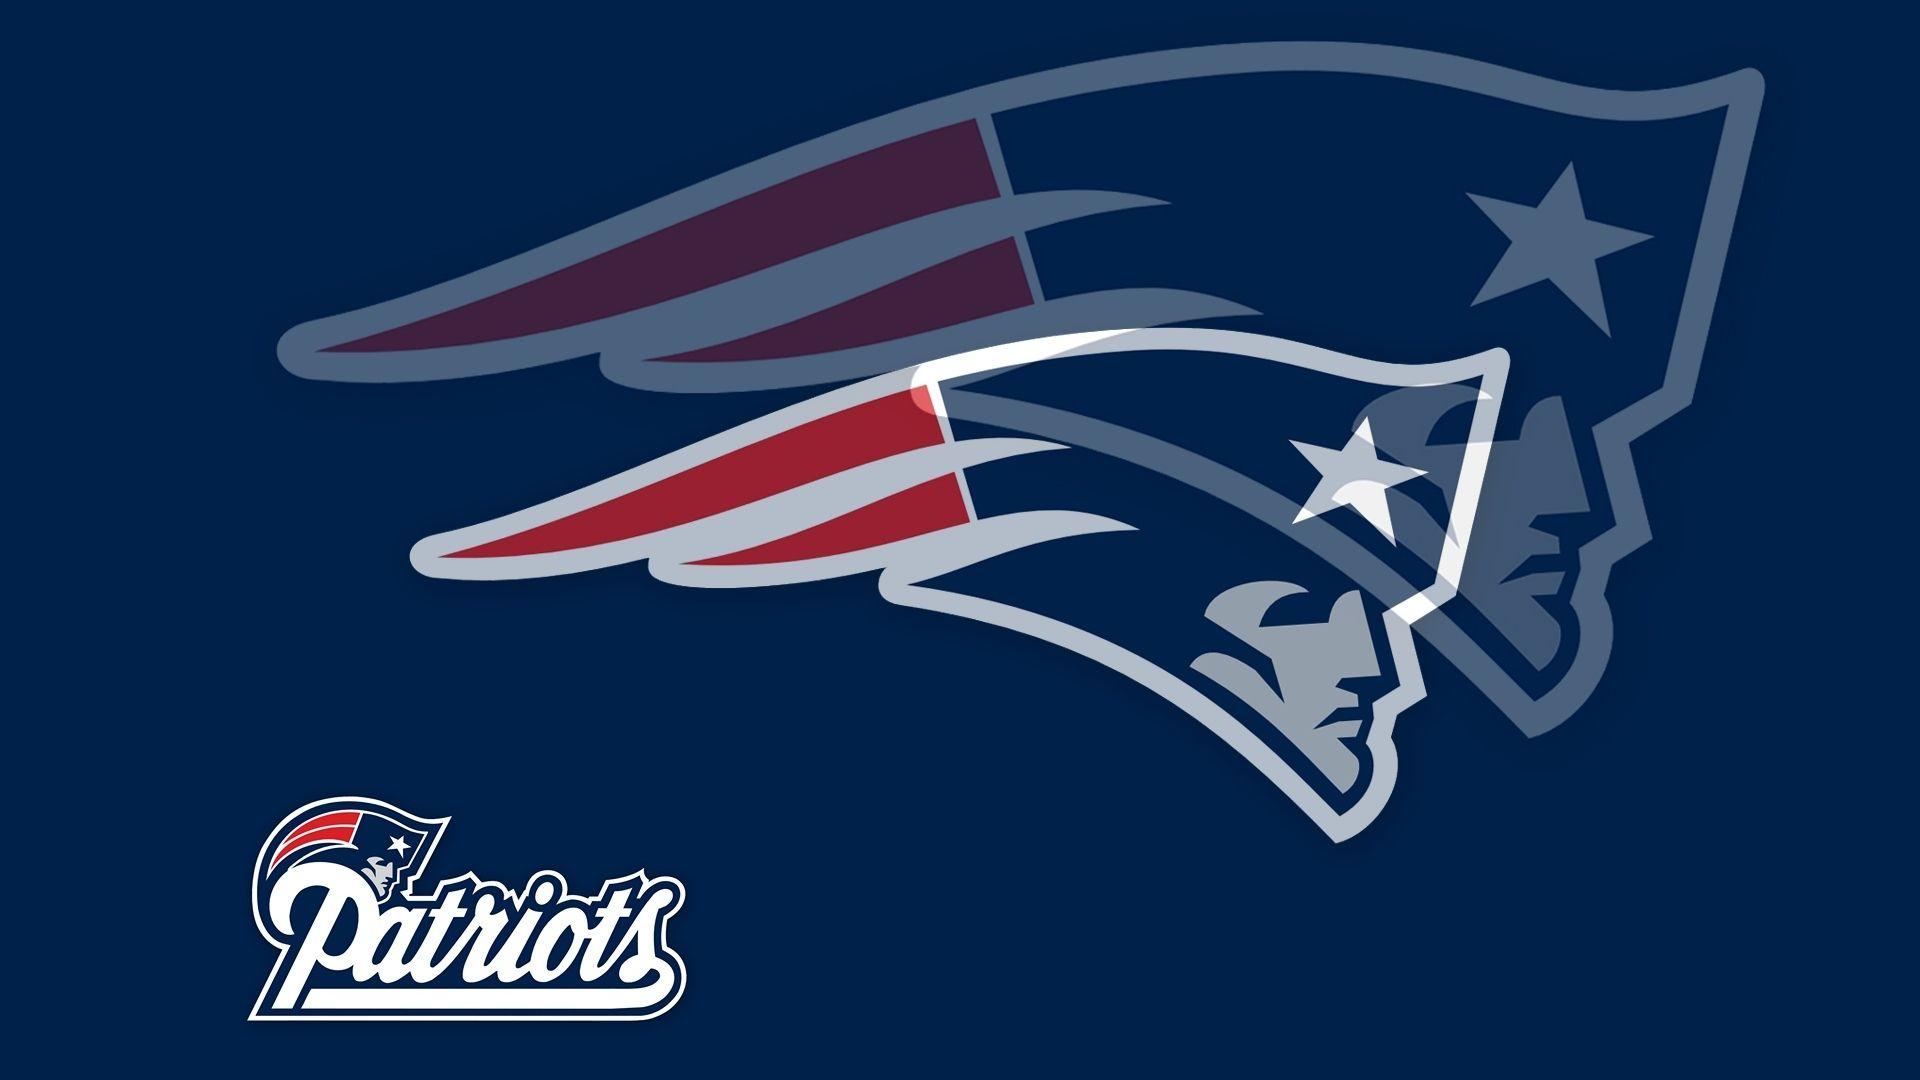 NFL Patriots Logo - NFL Logo New England Patriots wallpaper 2018 in Football